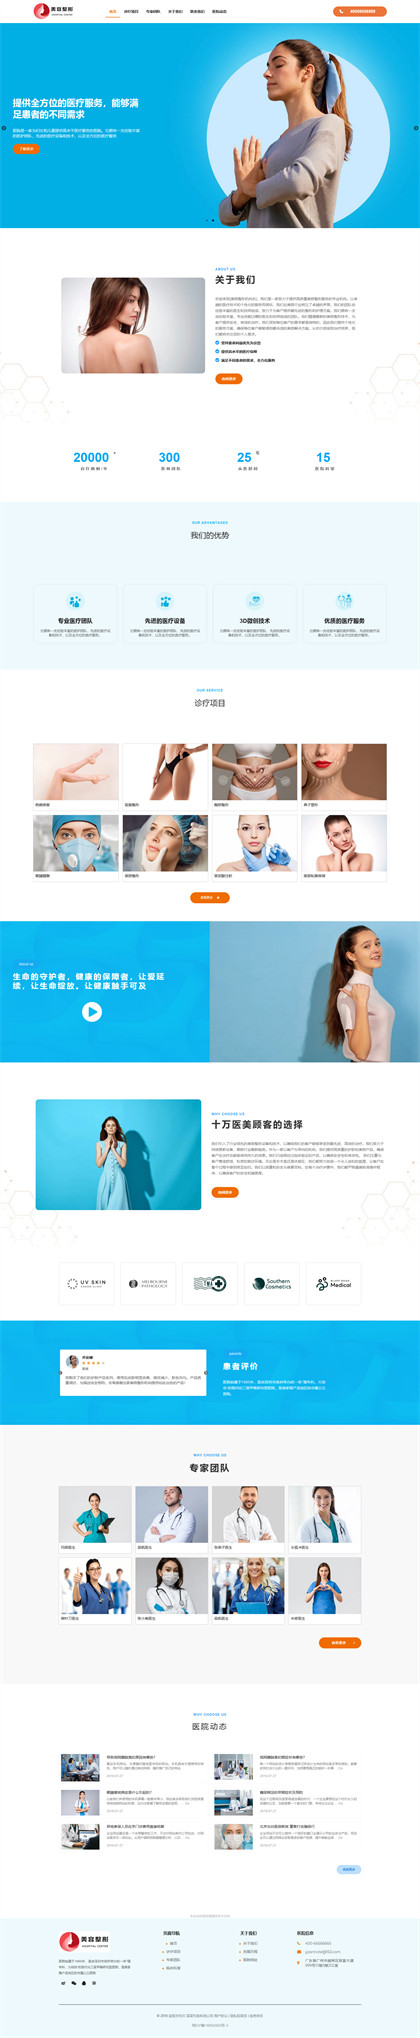 医疗美容-整形医院-整容医院-整容机构-医美加盟-中韩整形-网站模板网站模板图片